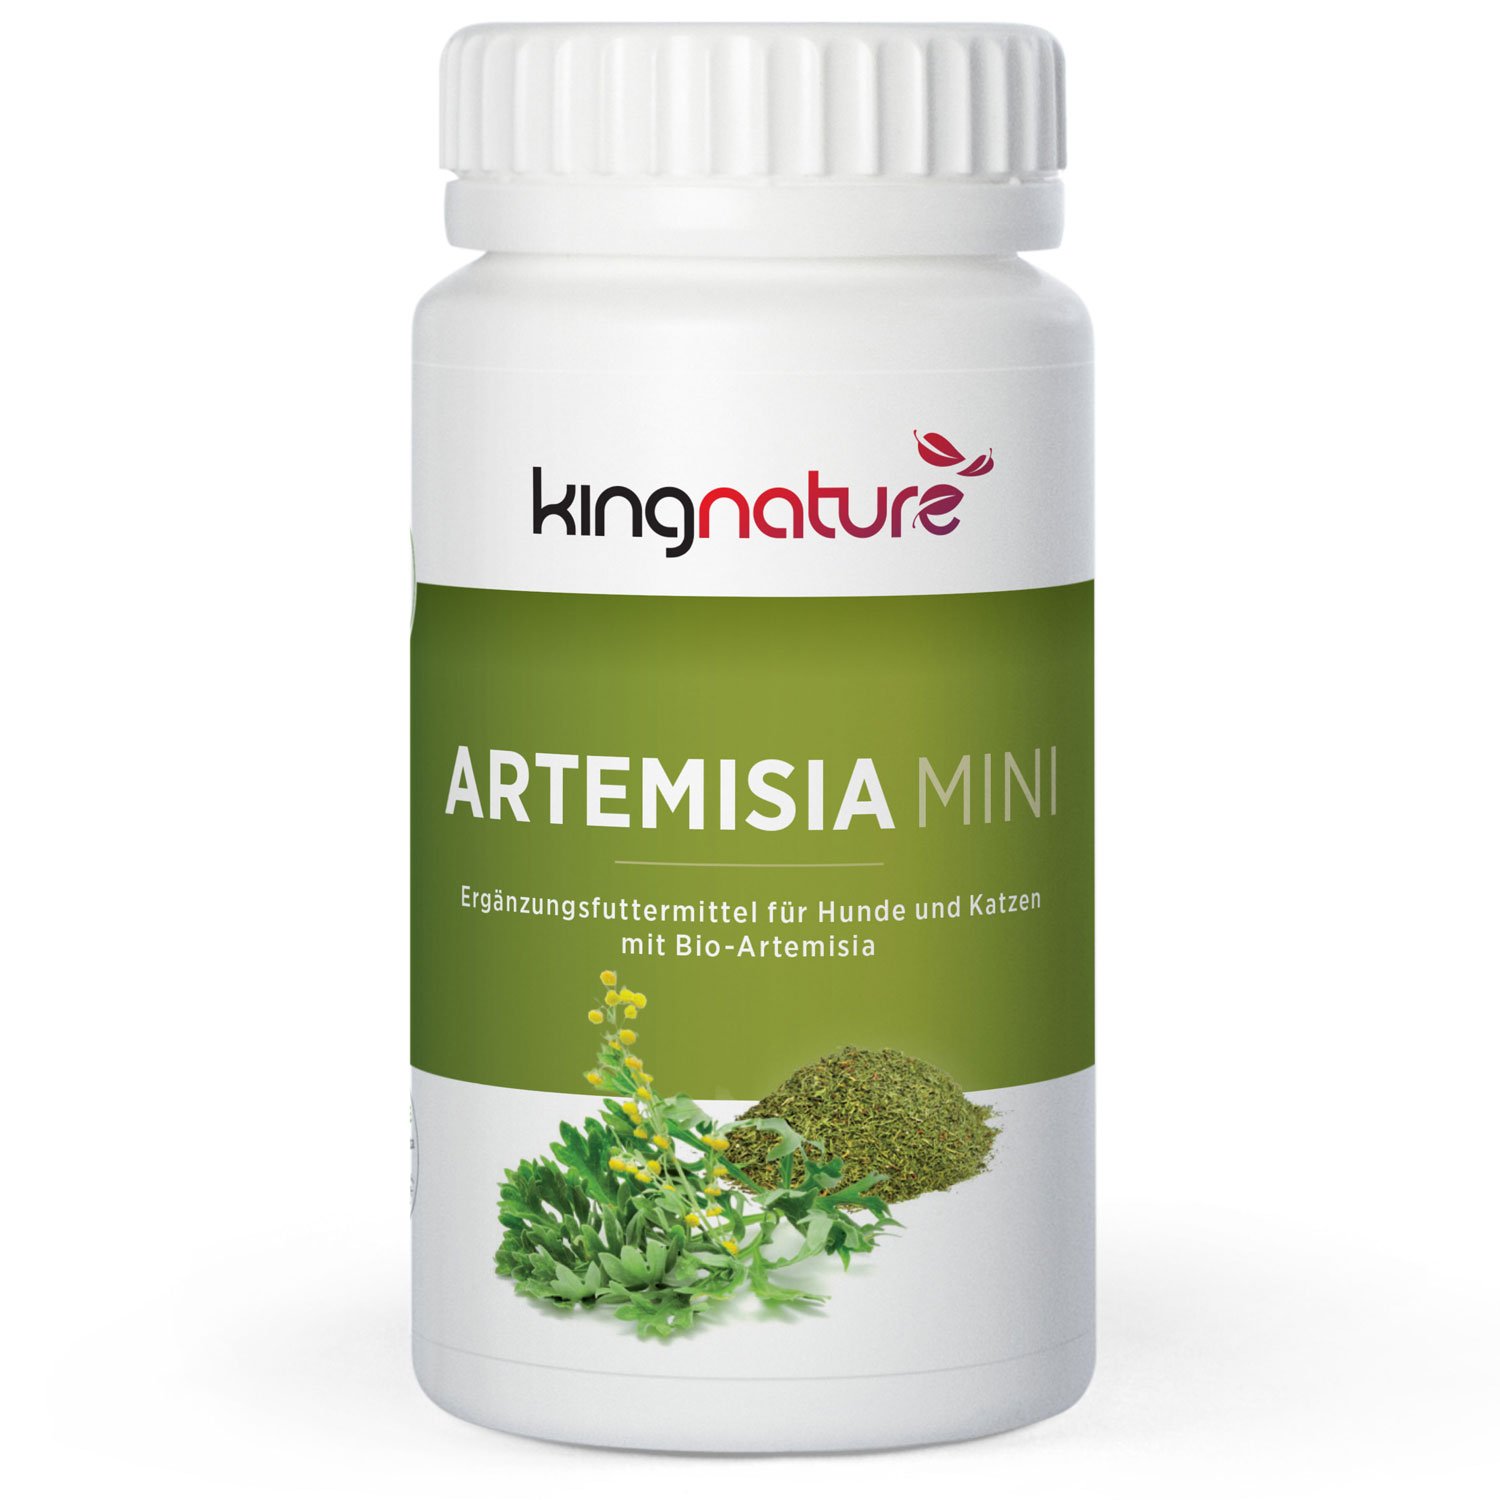 Artemisia Mini